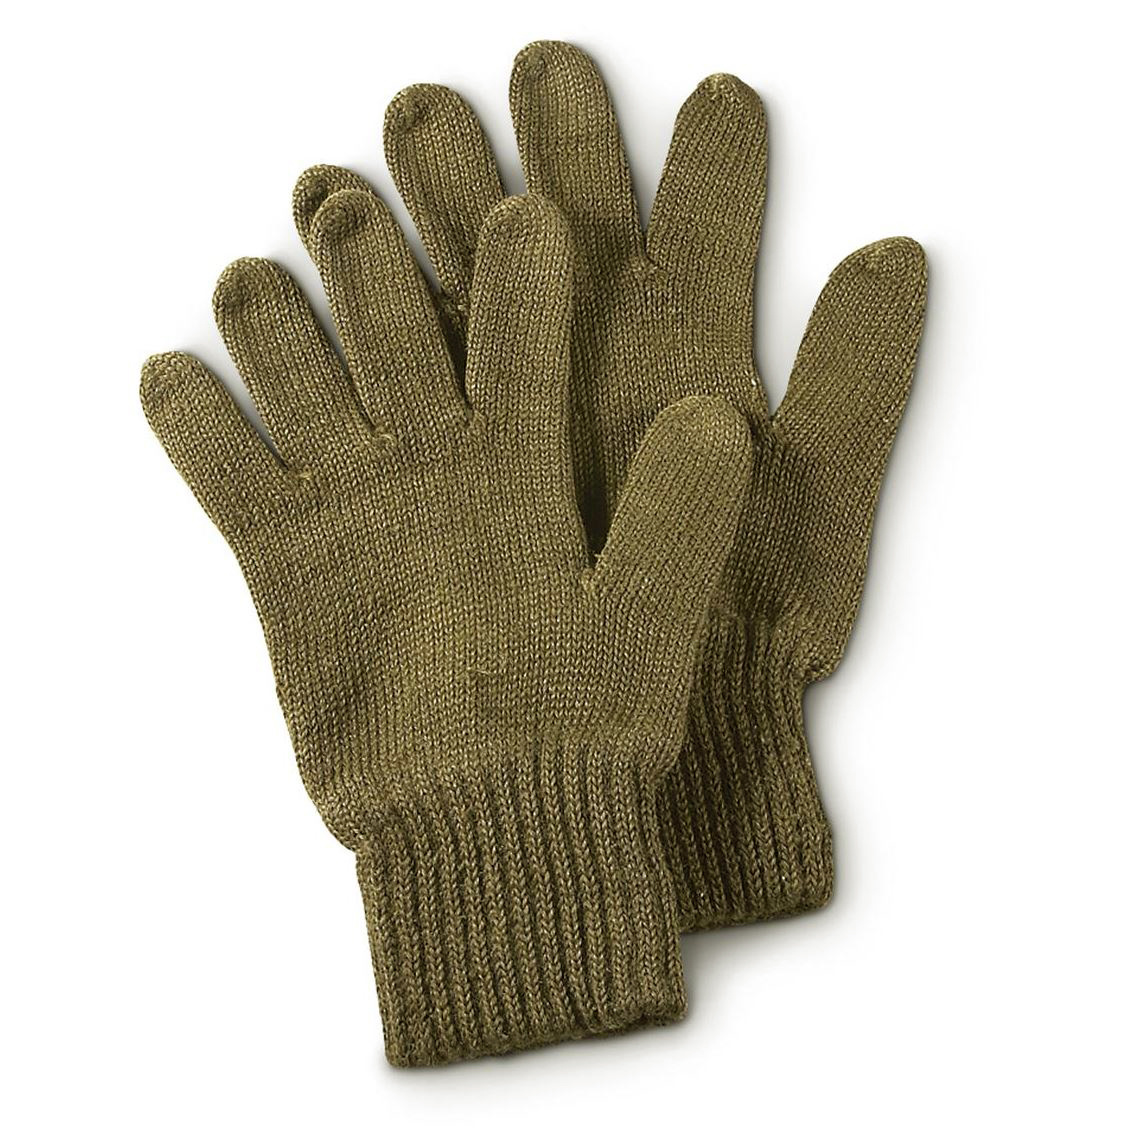 wool glove inserts